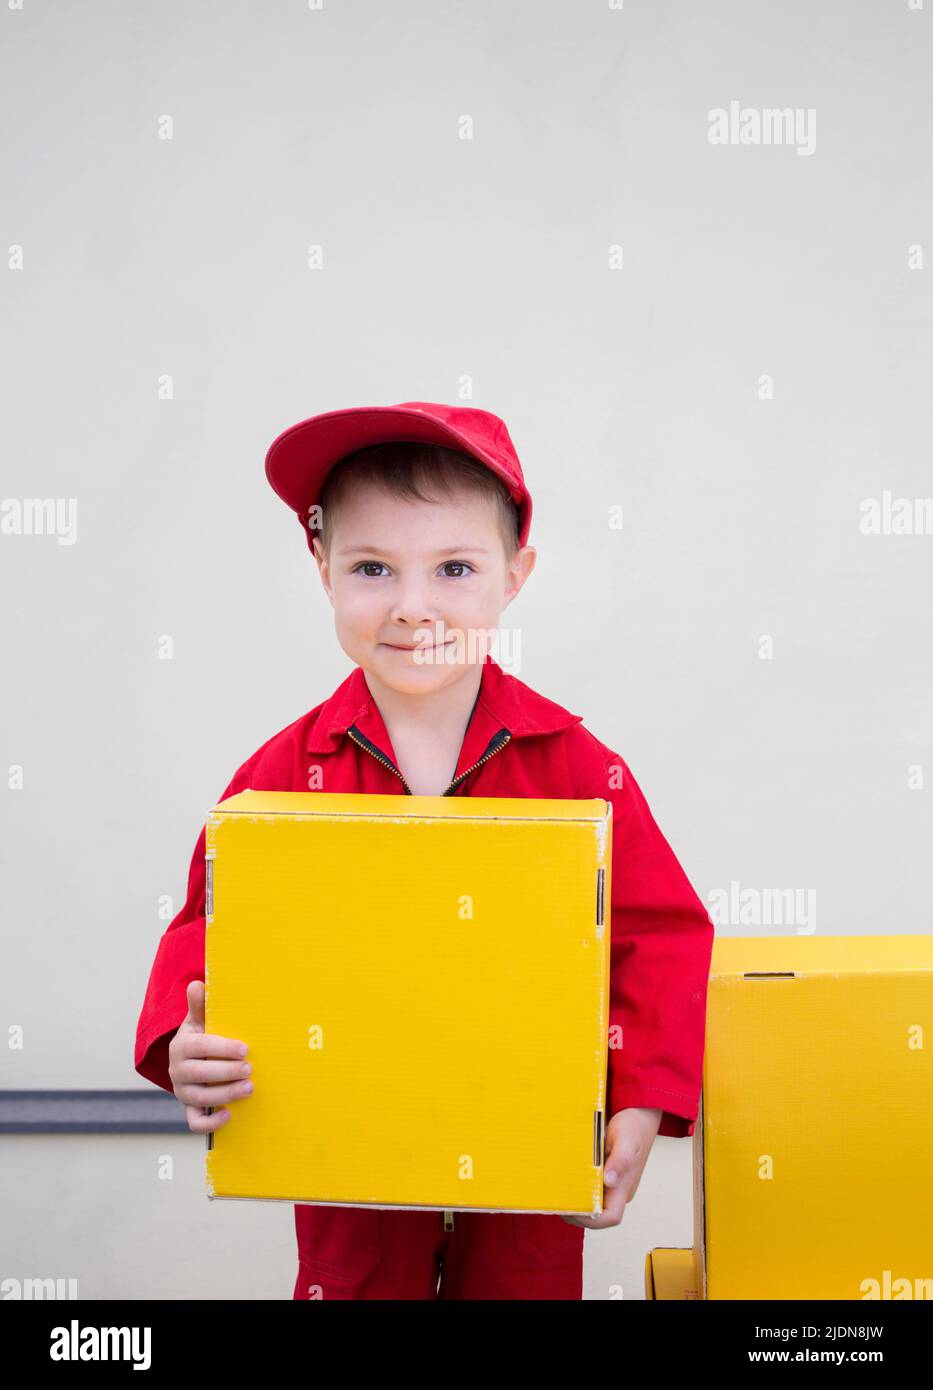 Junge 3-4 Jahre alt in einer roten Uniform und Kappe mit einem gelben Karton in den Händen. express Lieferung von Glück. Positives Feedback. Platz für adver Stockfoto